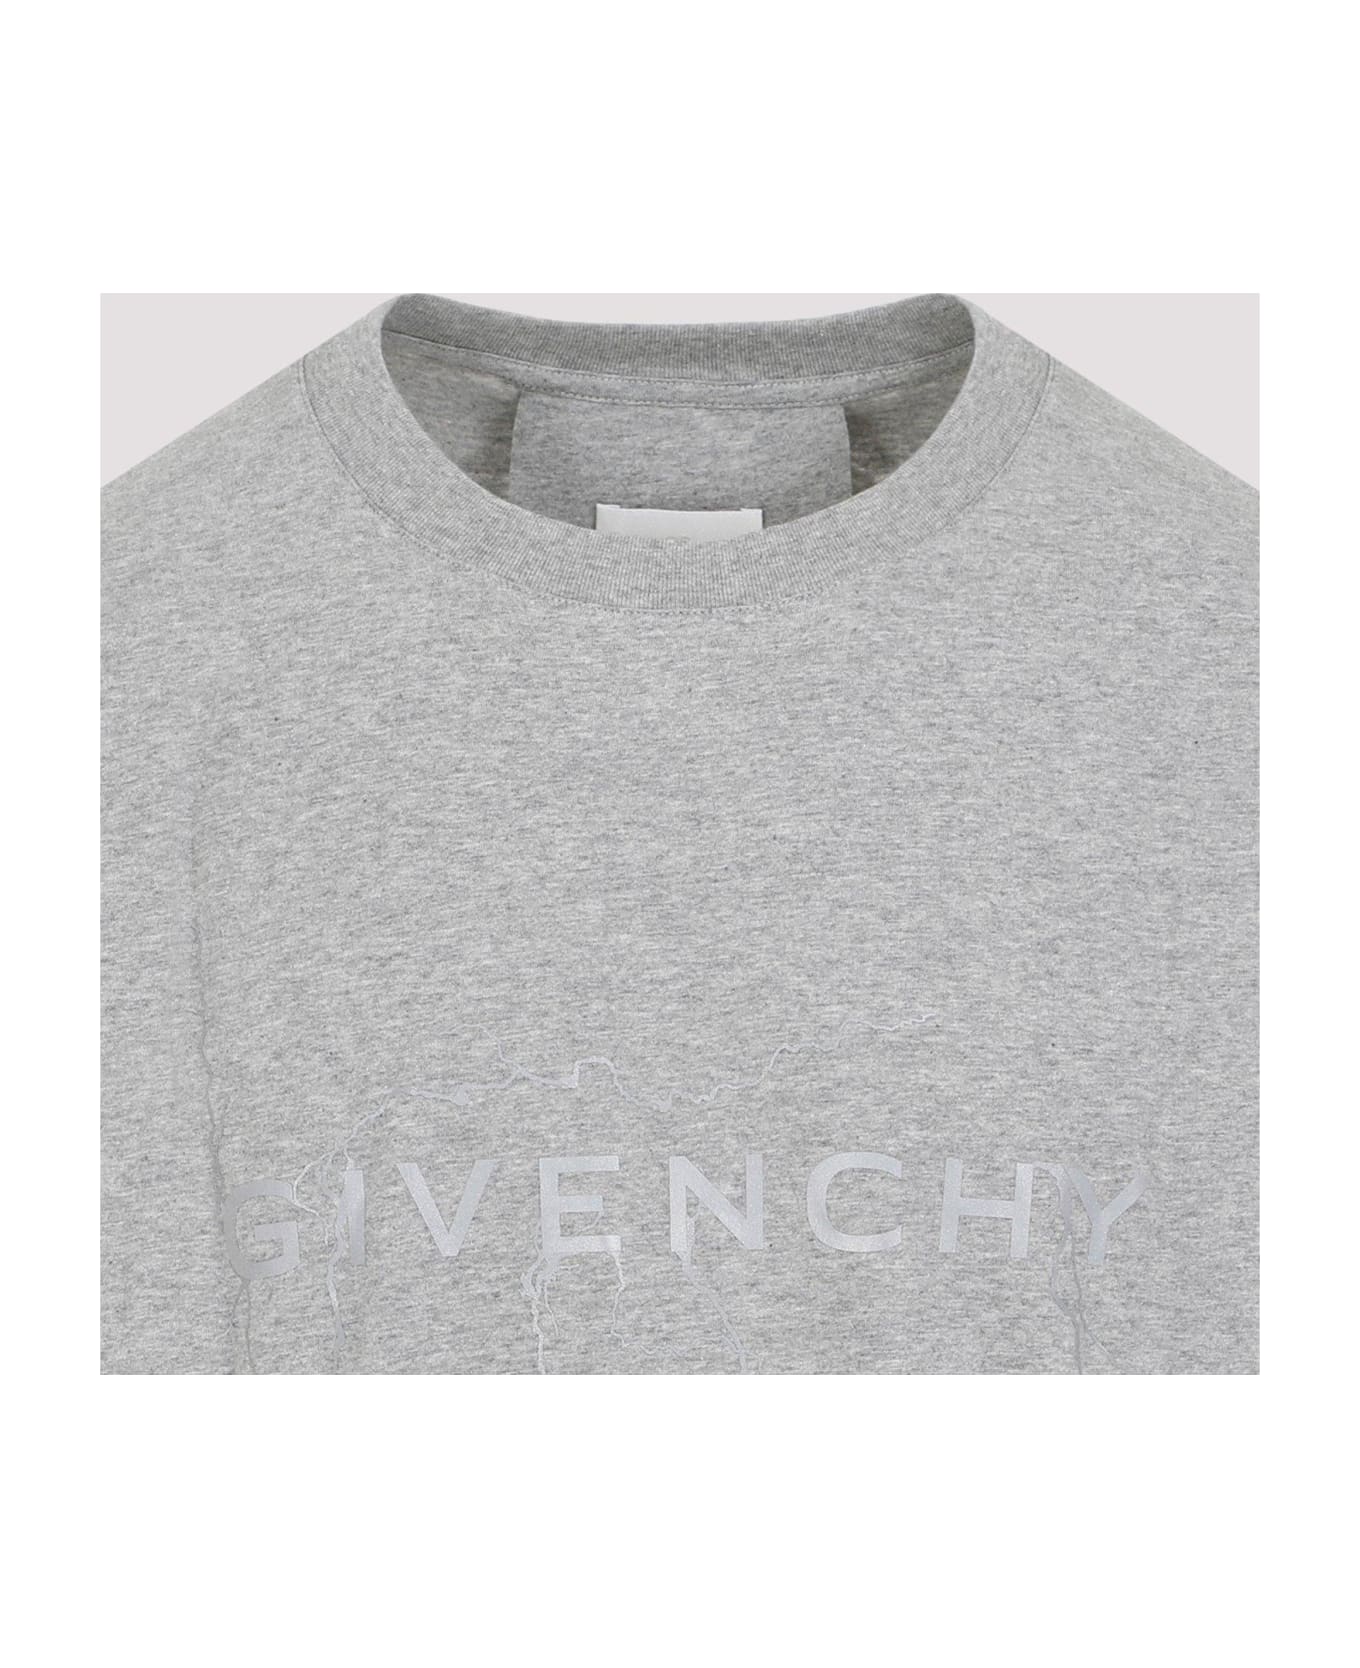 Givenchy Logo Printed Crewneck T-shirt - LIGHT GREY シャツ